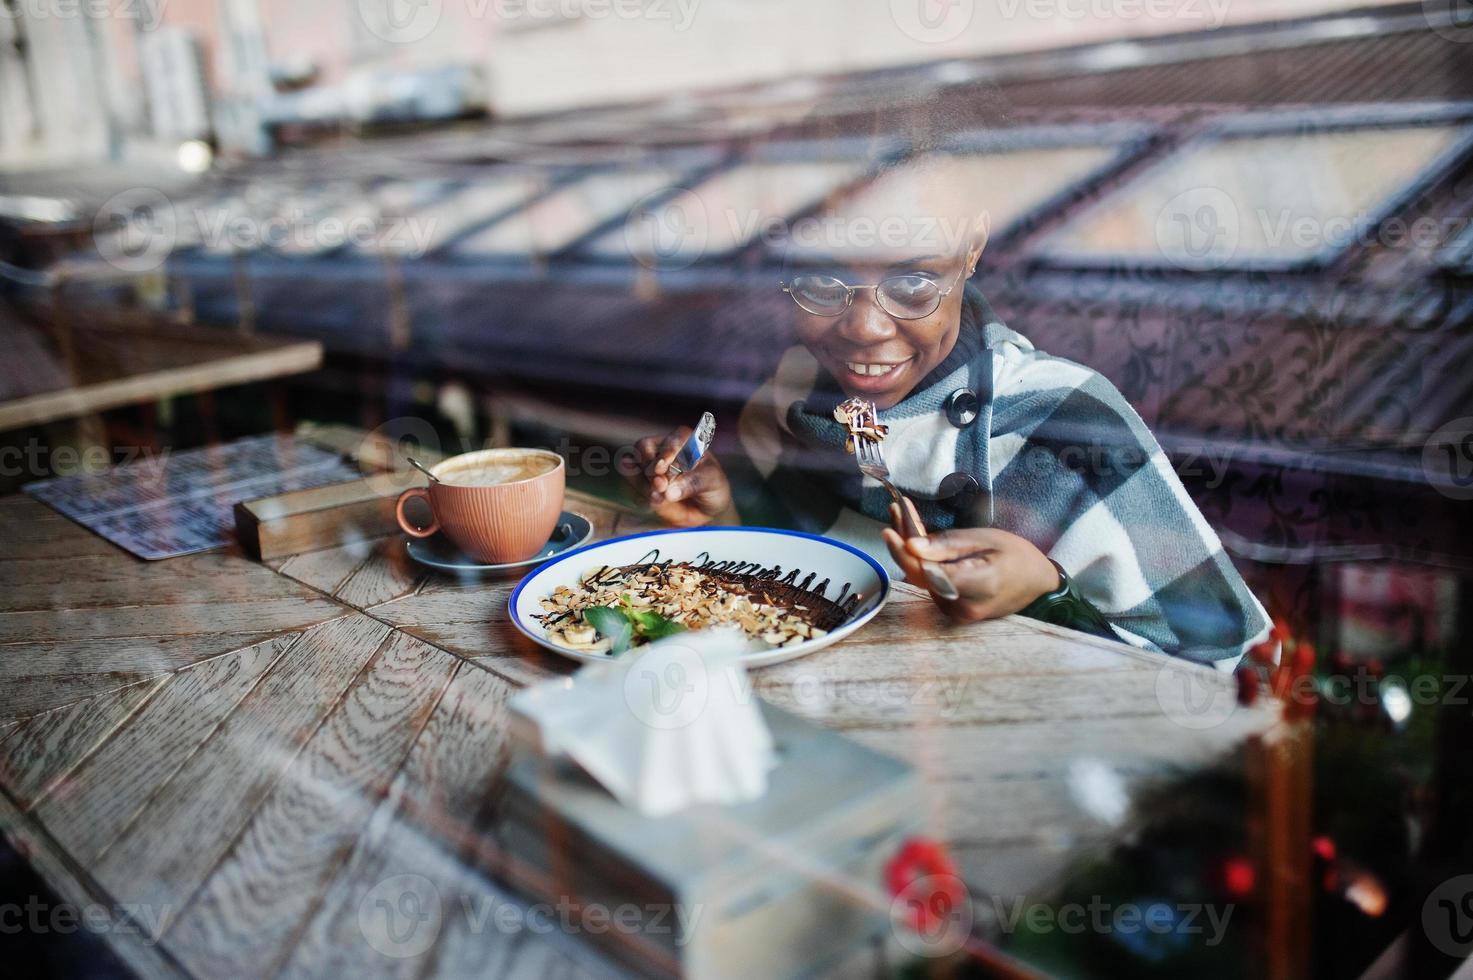 afrikanische frau in kariertem umhang und brille, die im café sitzt und dessert isst. foto